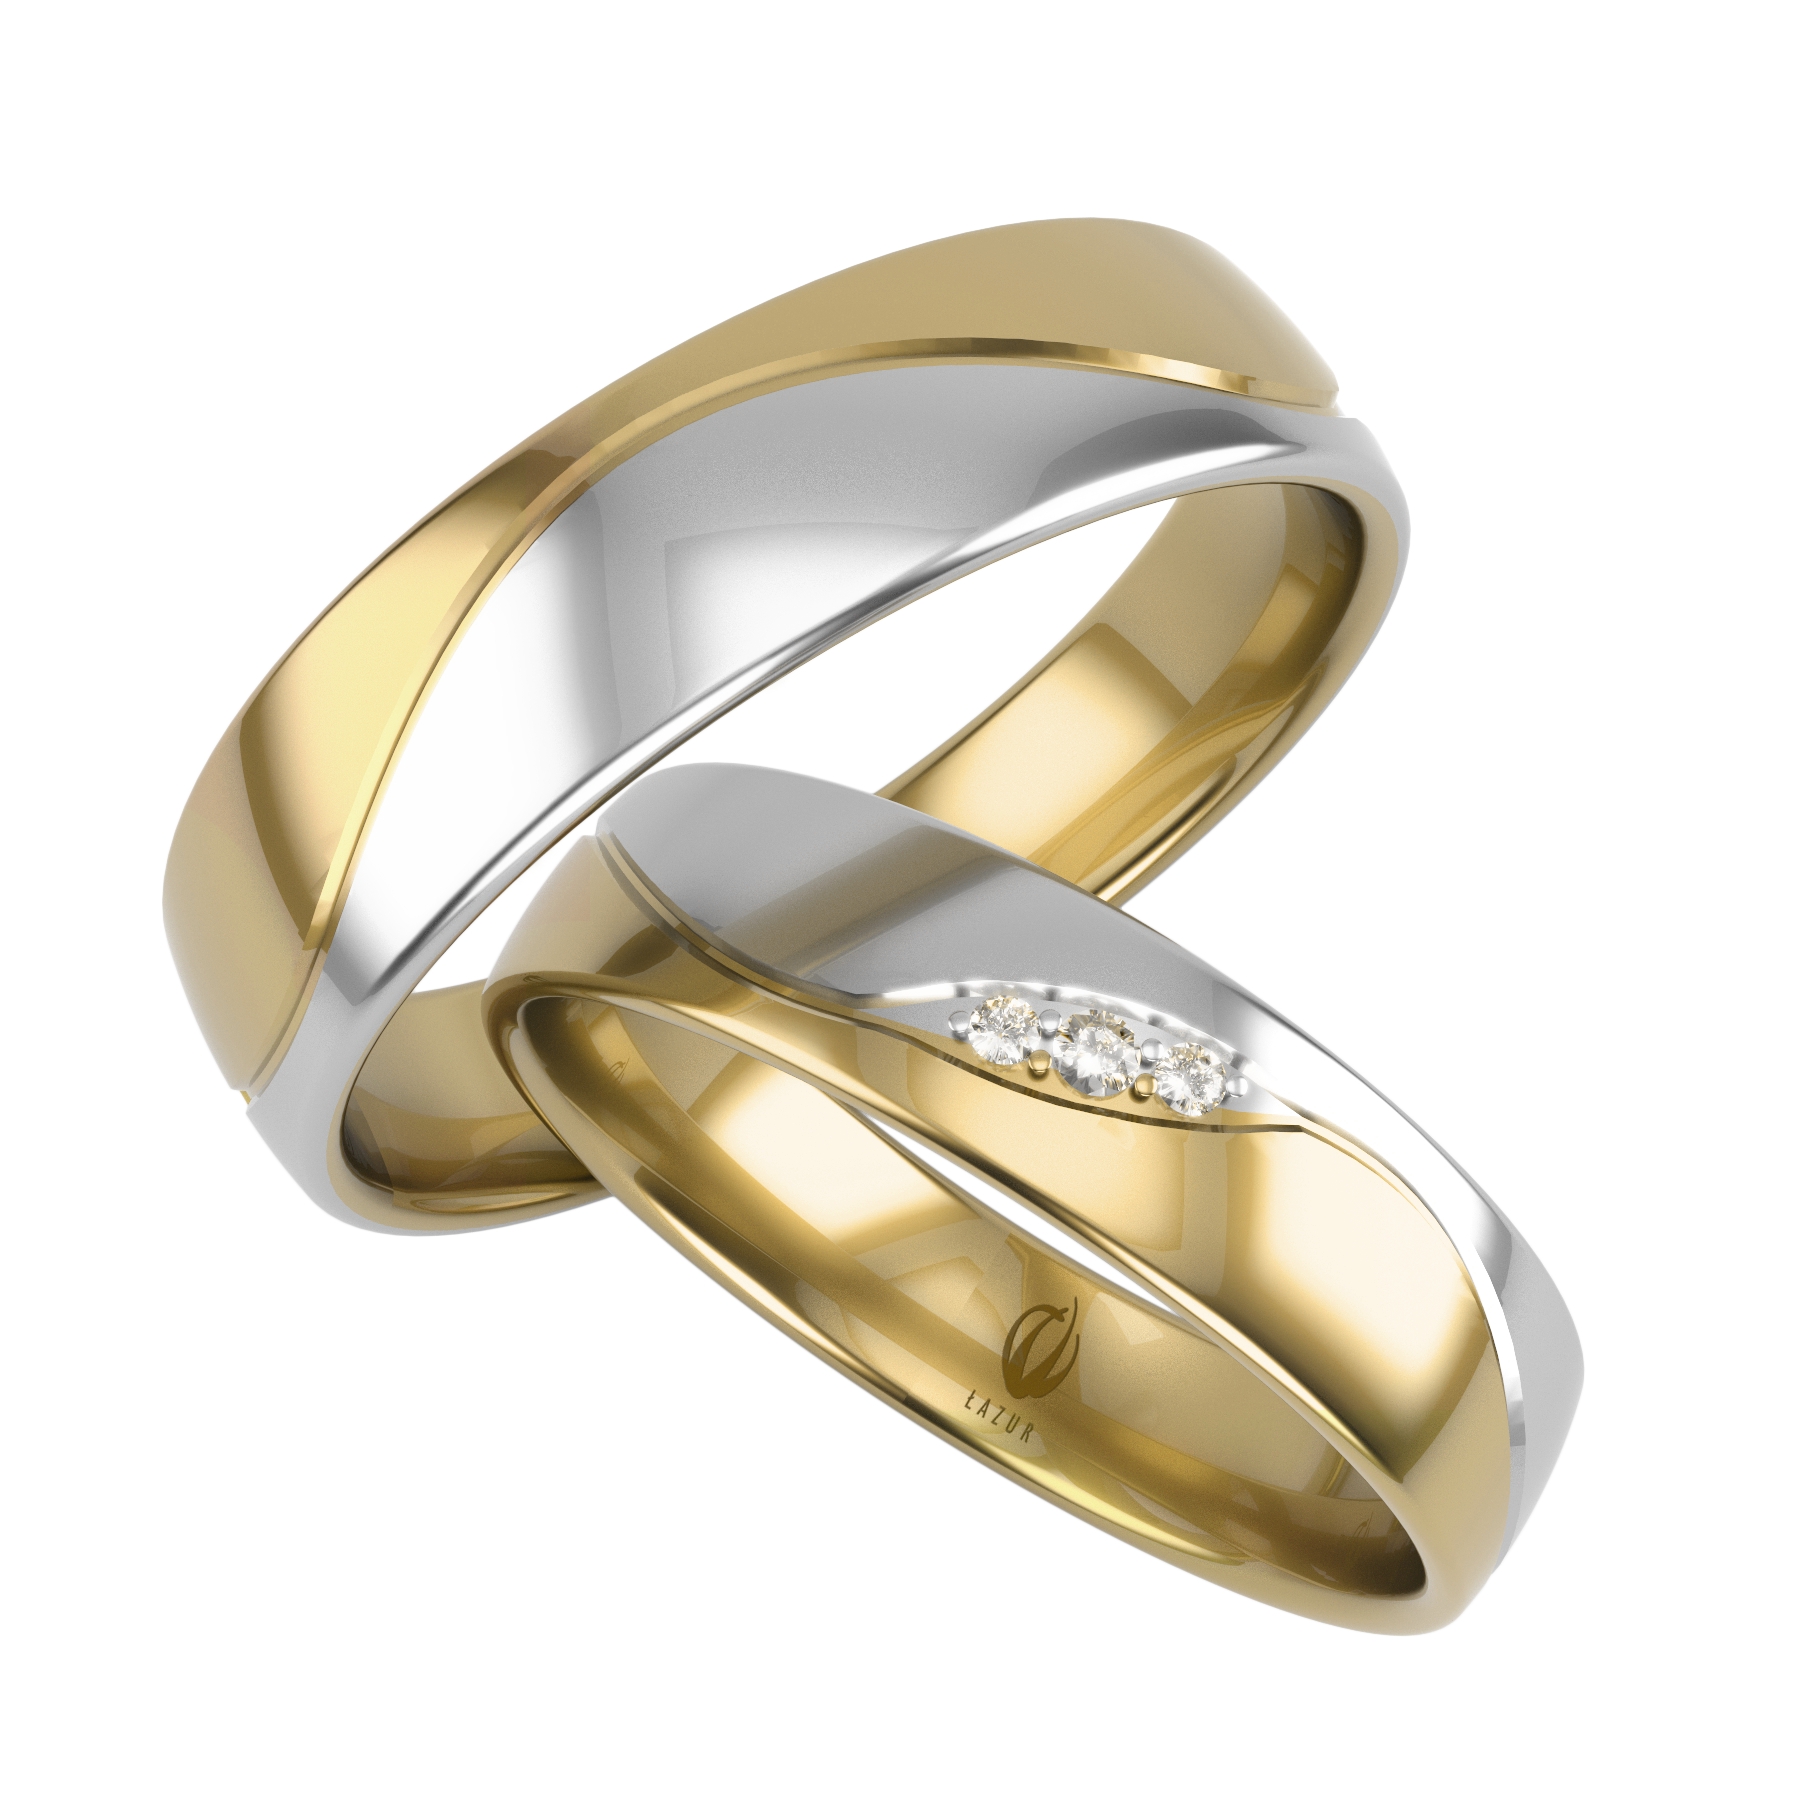 Купить недорого обручальные кольца золото. 585 Золотой обручальные кольца. Обручальное кольцо золото 585 женское. Обручальное кольцо XP l13. Кольцо обручальное золотое кольцо 585.